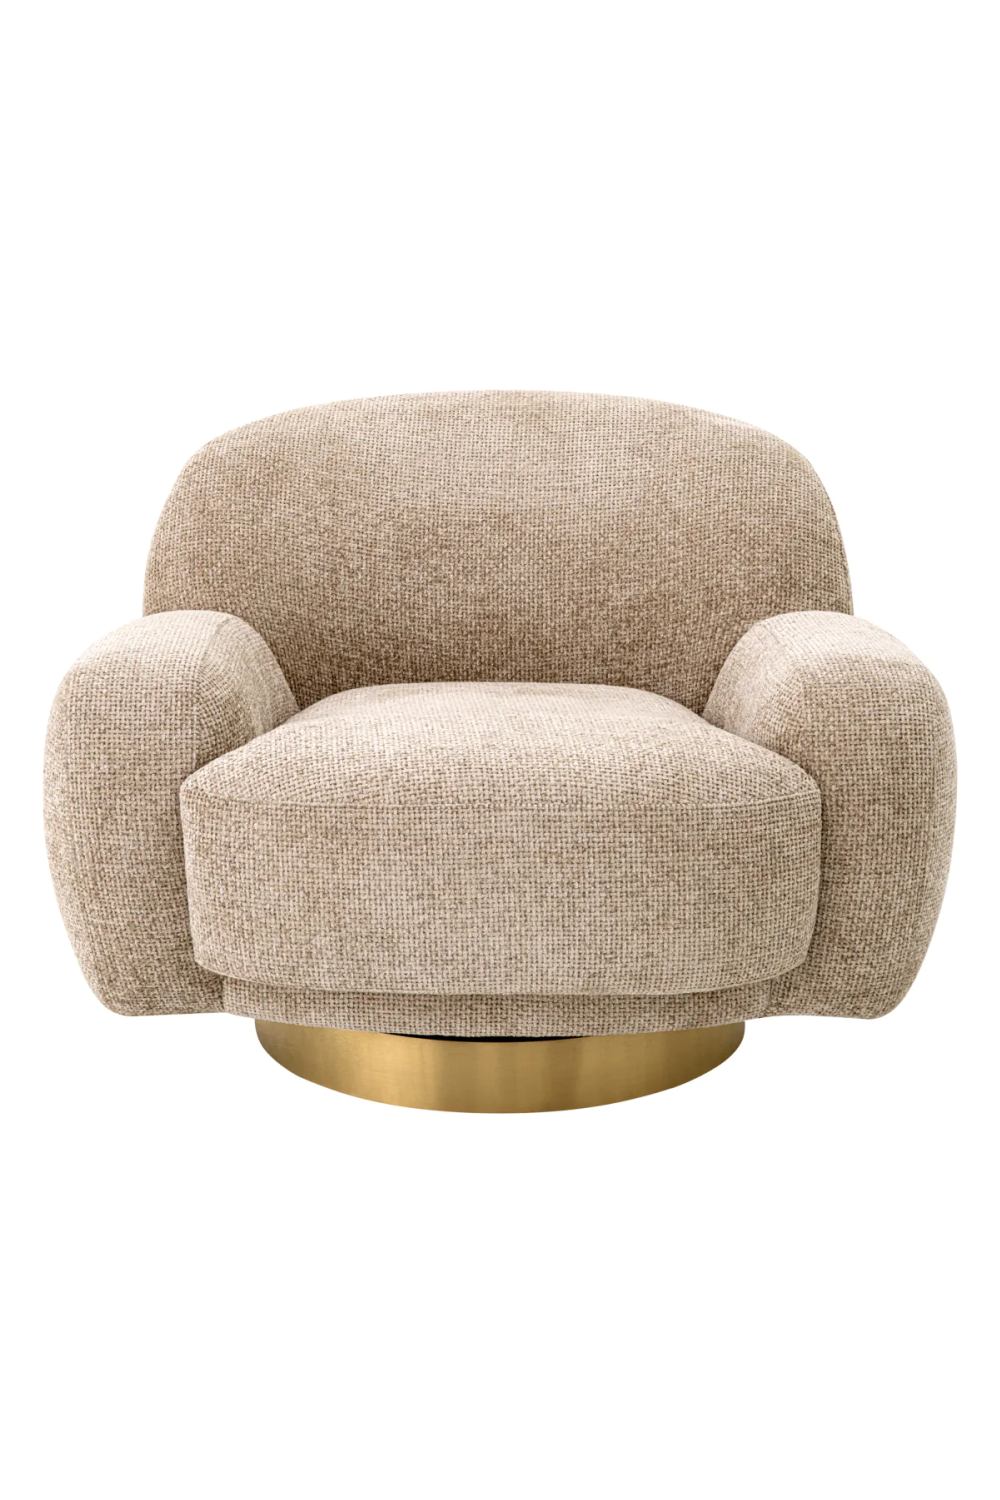 Flower Design Swivel Chair, Eichholtz Mello